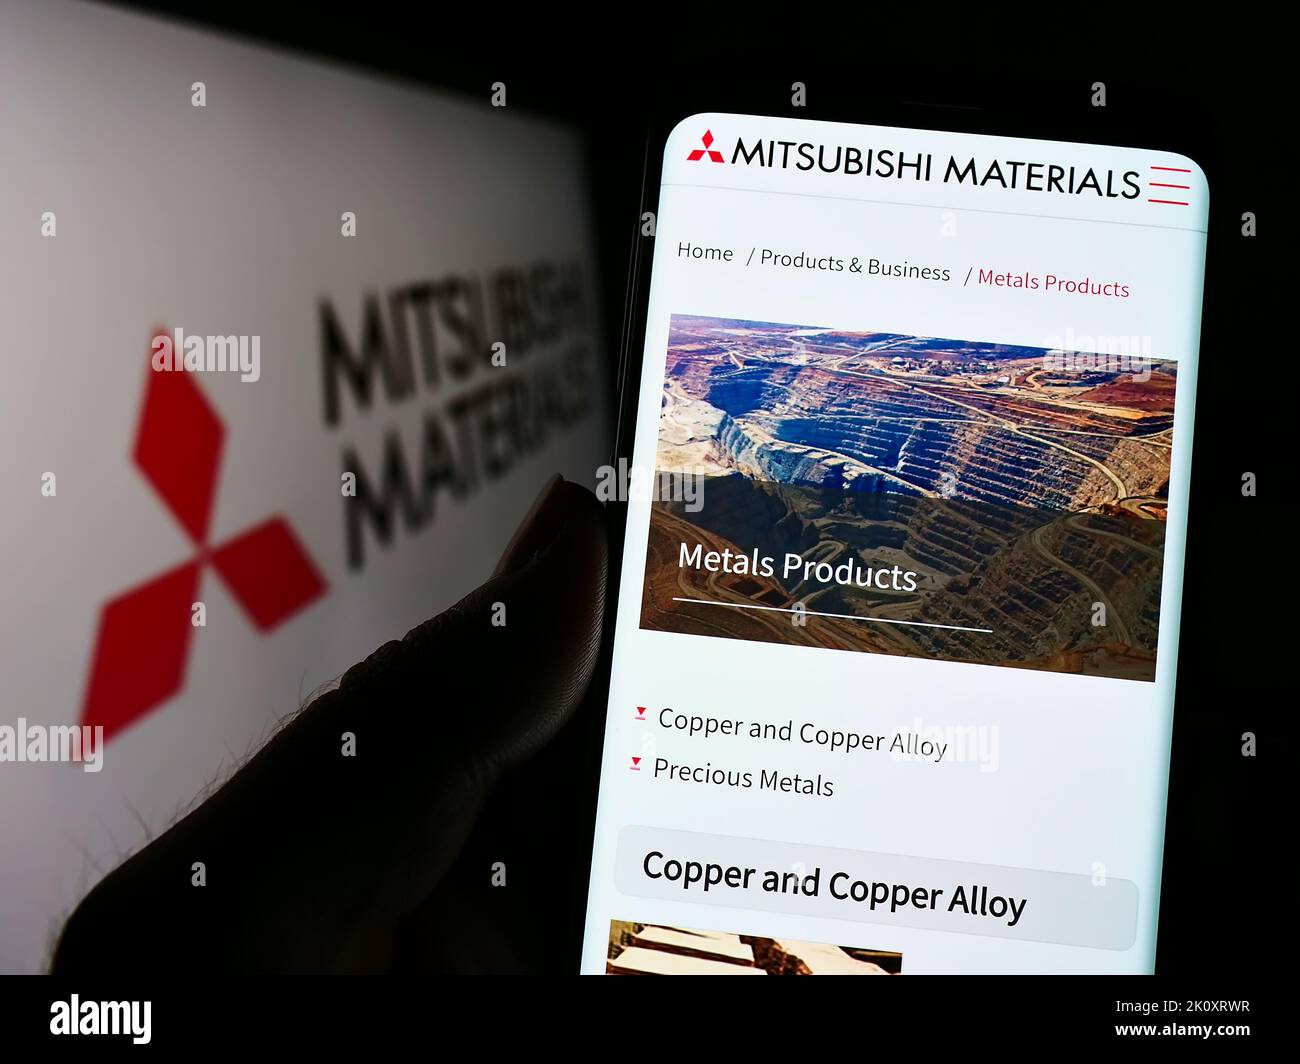 Personne détenant un smartphone avec le site Web de la société Mitsubishi Materials Corporation (MMC) à l'écran avec le logo. Concentrez-vous sur le centre de l'écran du téléphone. Banque D'Images